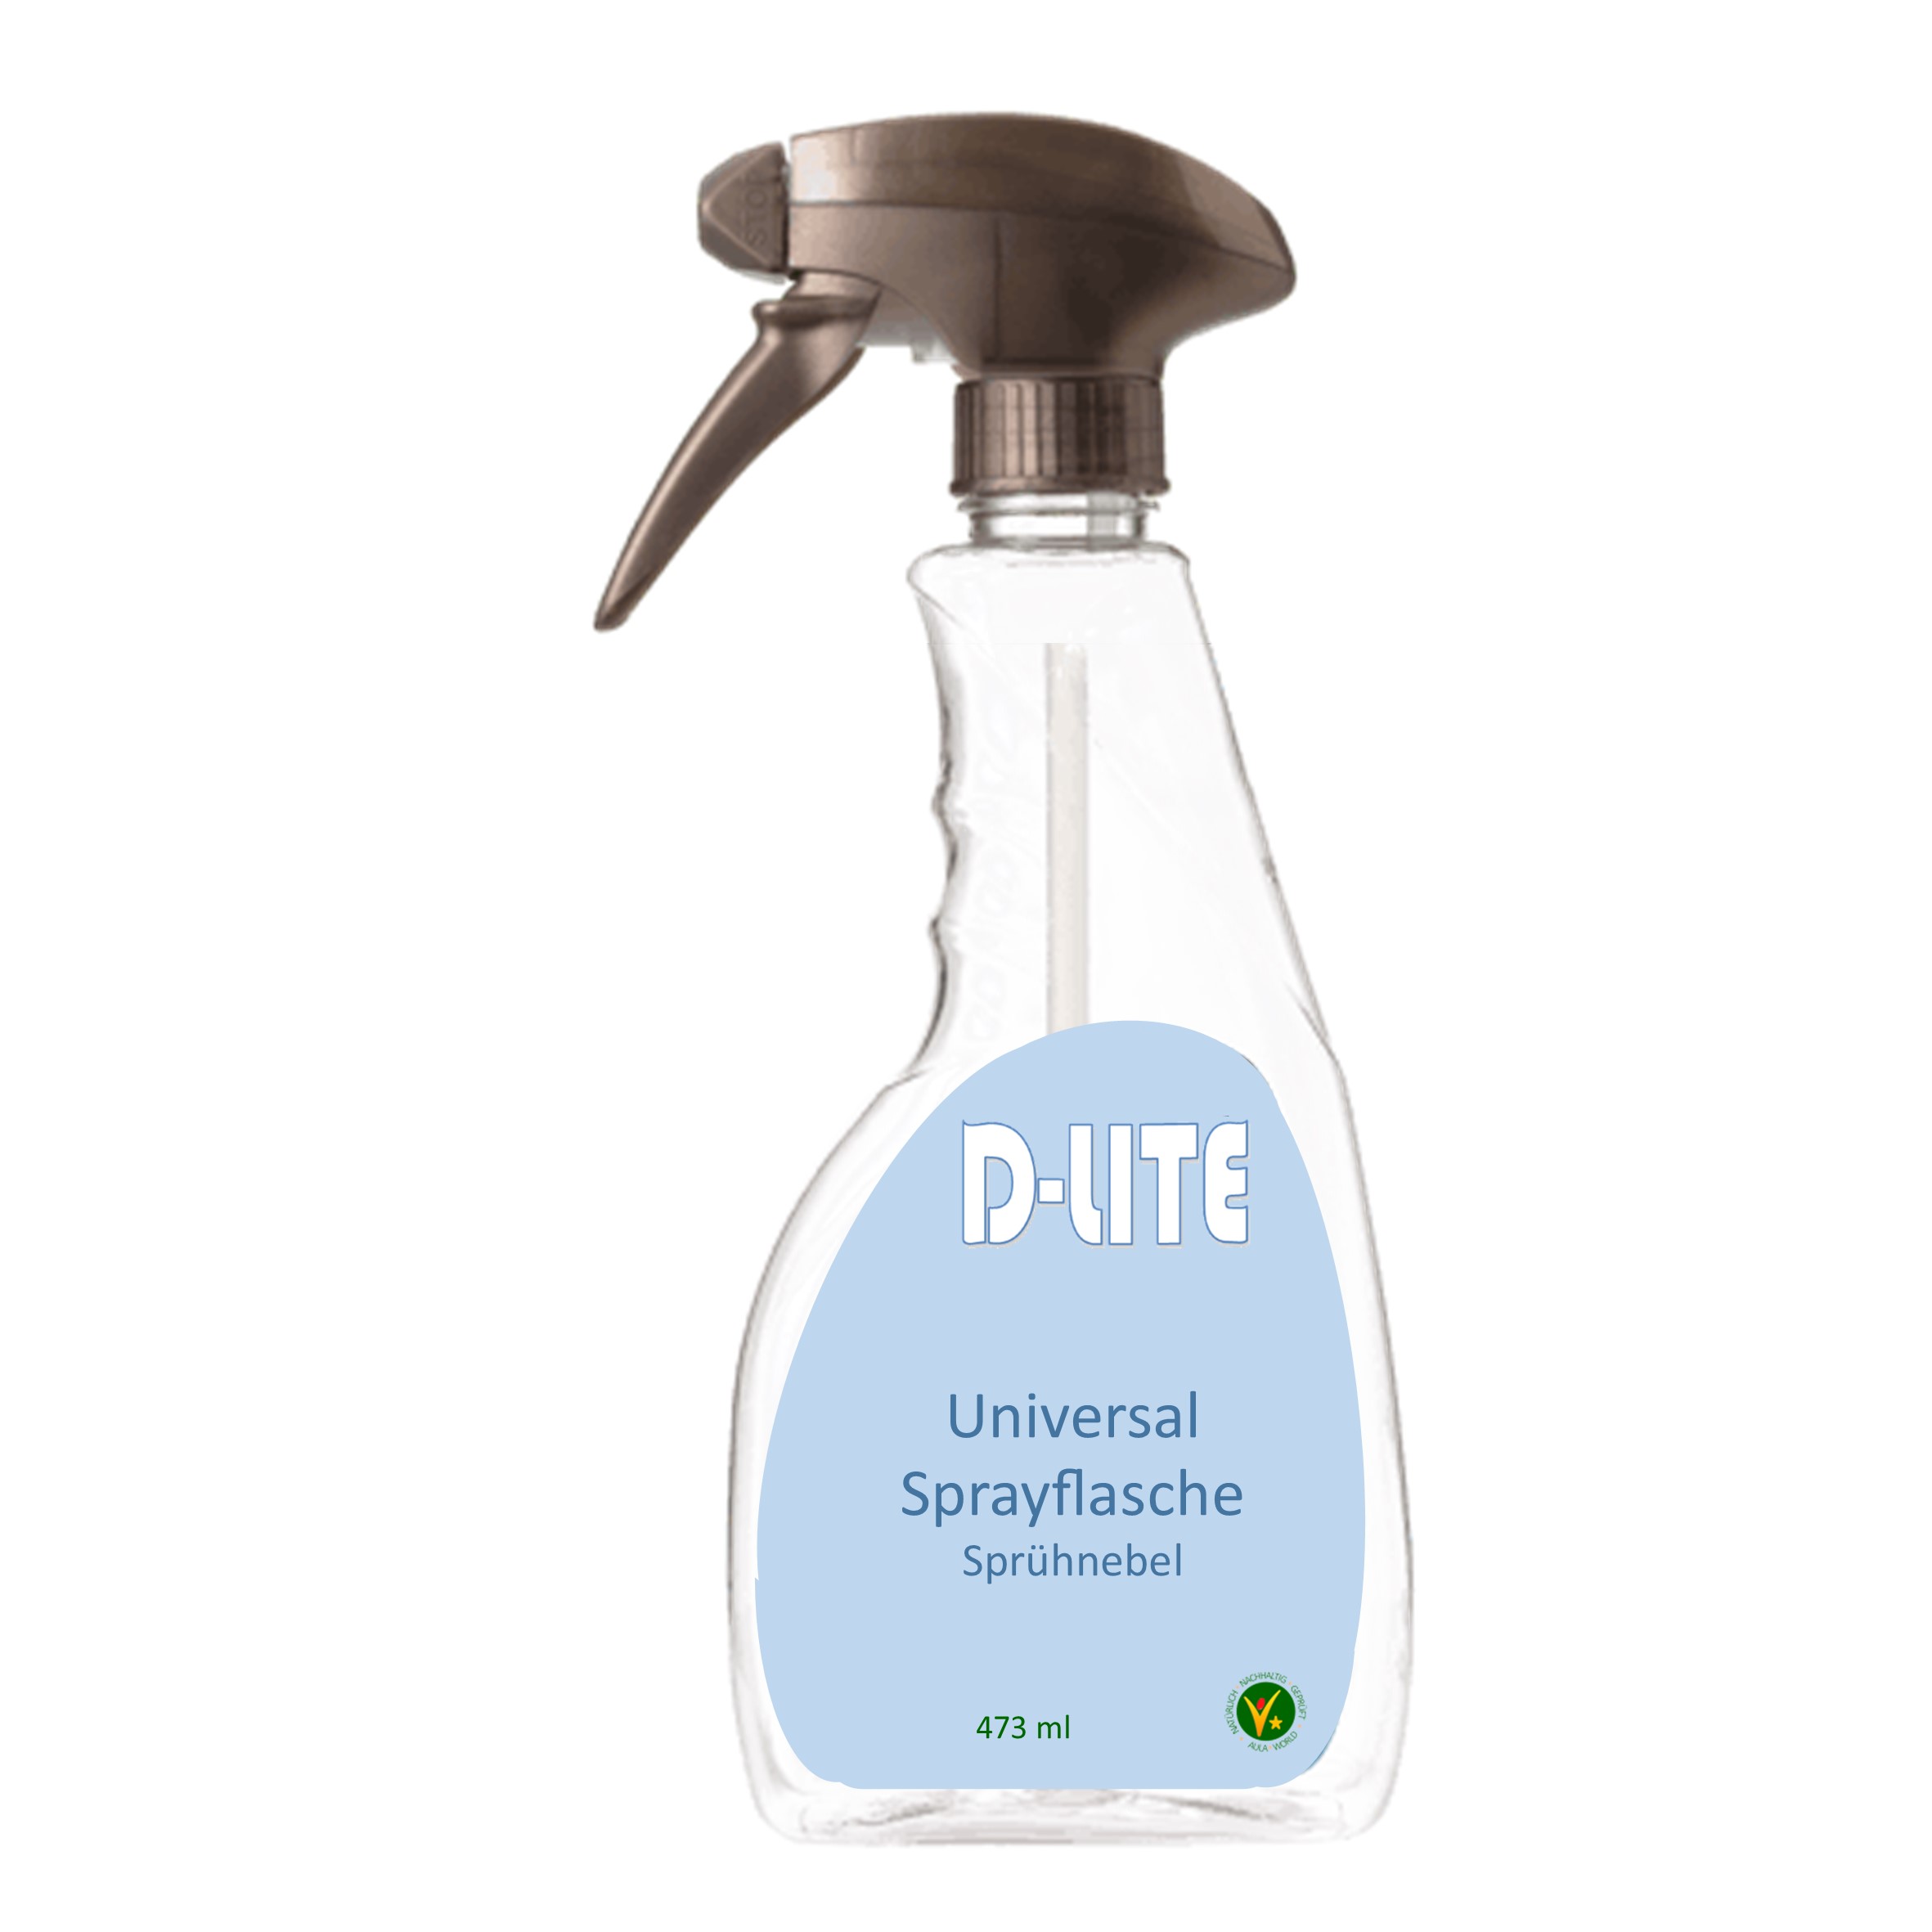 D-LITE Premium 473 ml Sprayflasche